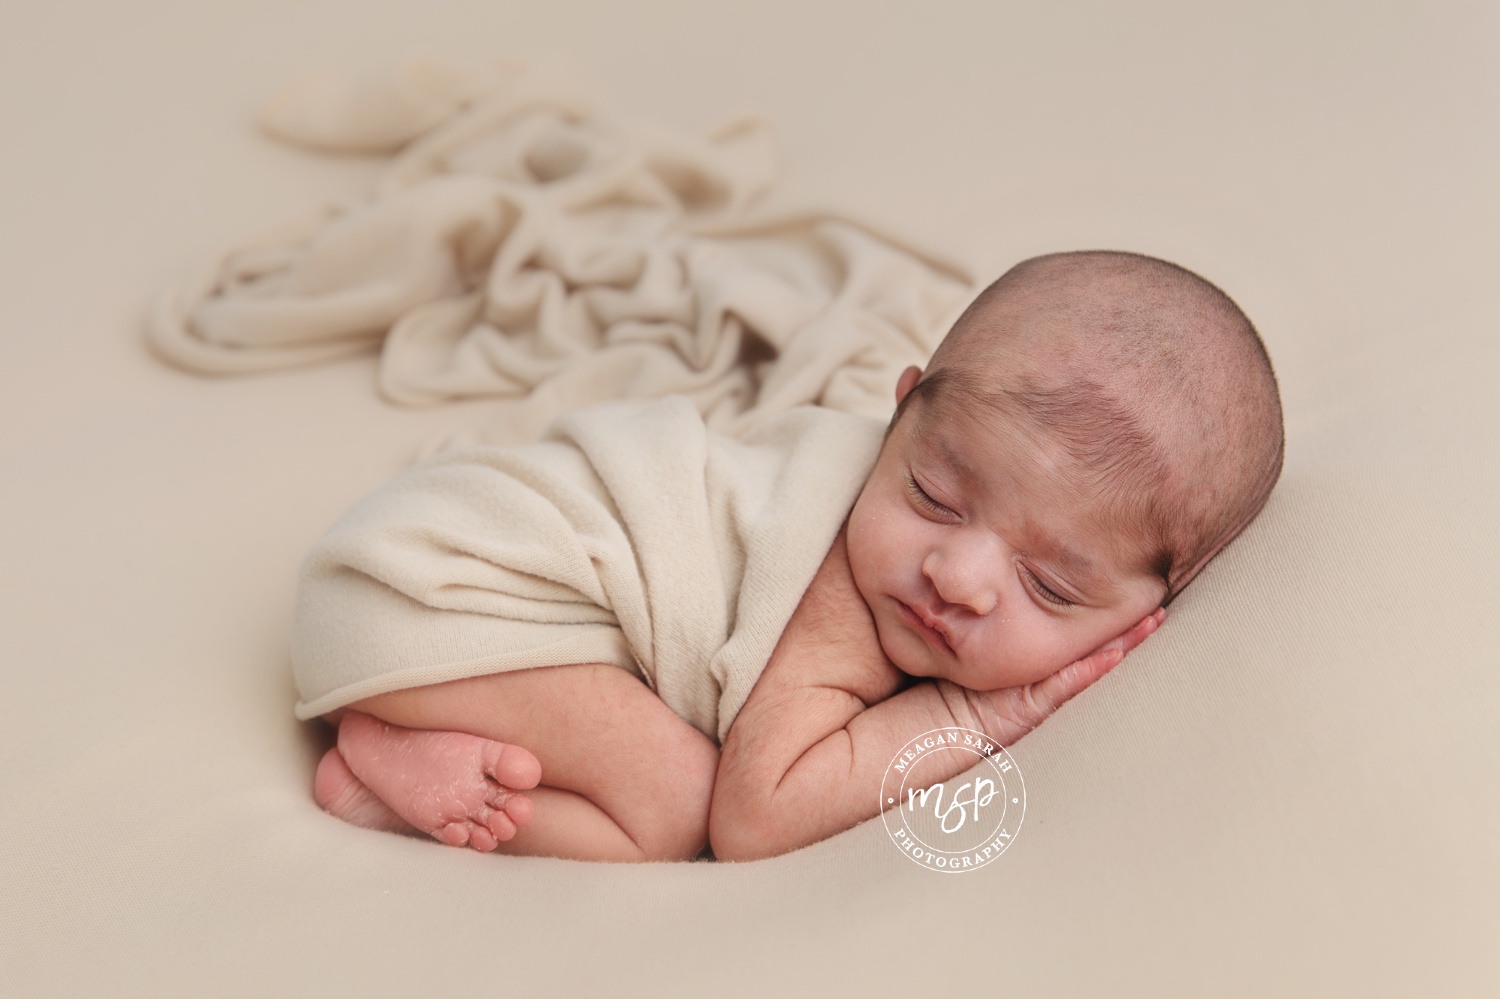 20181219_7130_Newborn_Maya-Nour_Meagan_Sarah_Photography_Leeds_WEB.jpg